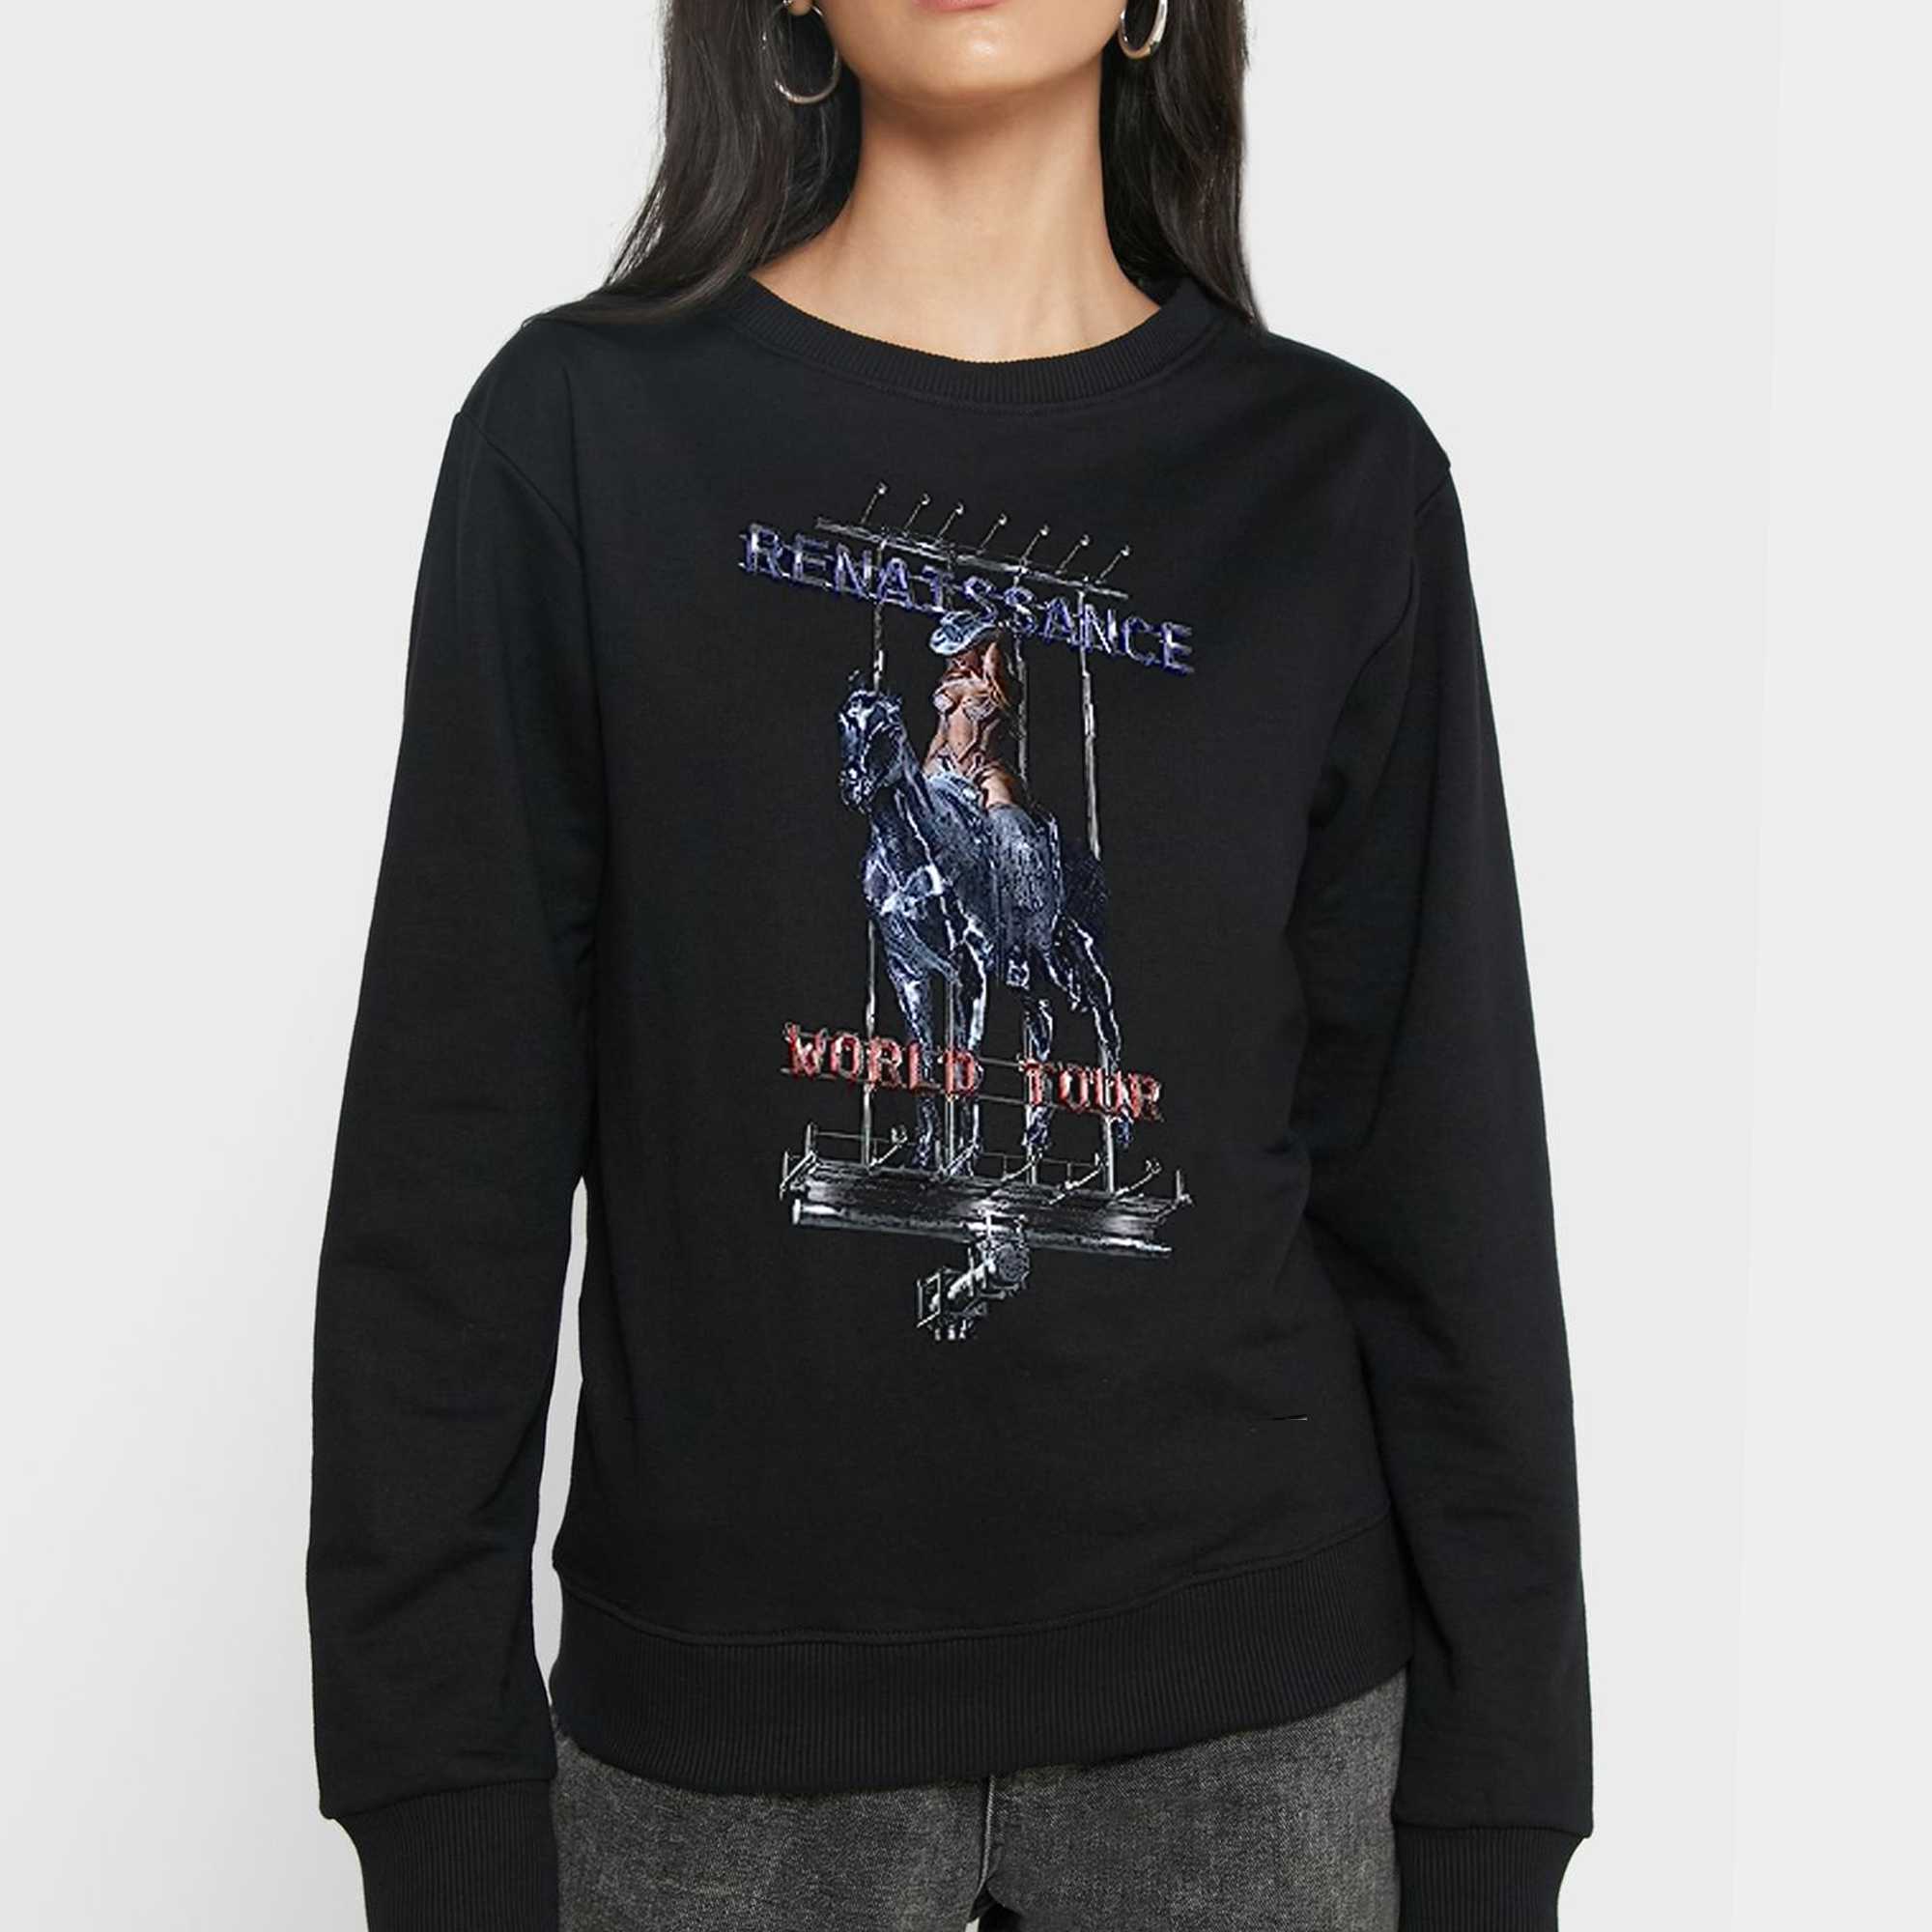 Official Beyoncé Renaissance World Tour Merch Billboard T-shirt Sweatshirt